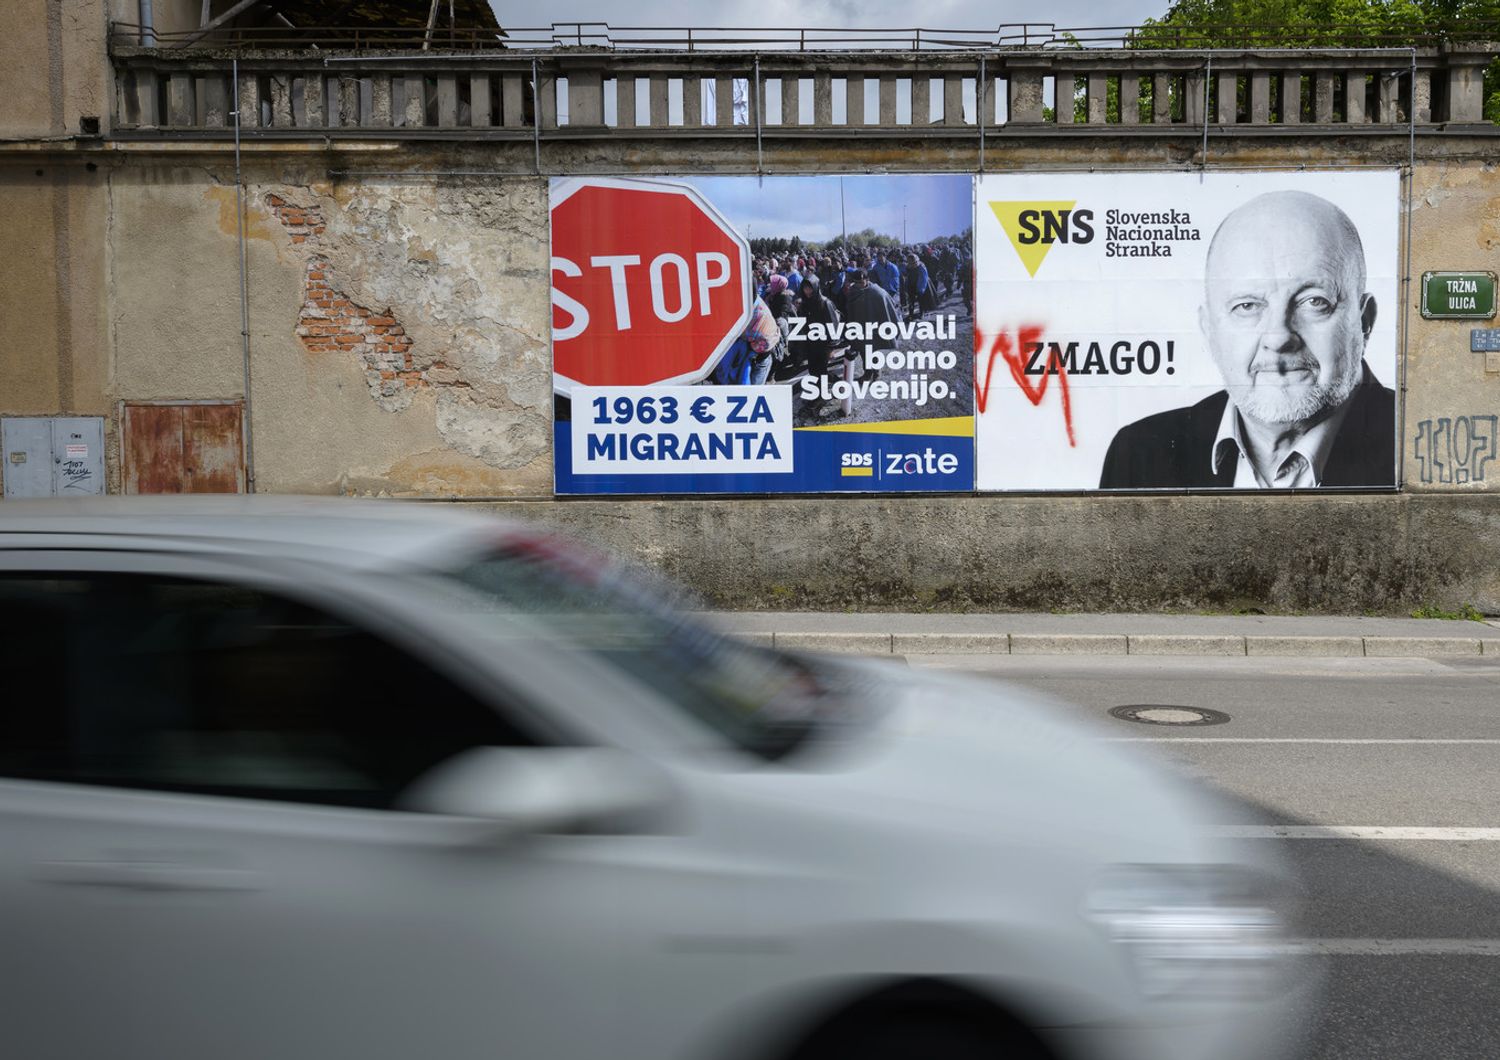 Le elezioni slovene premiano la destra anti-immigrazione